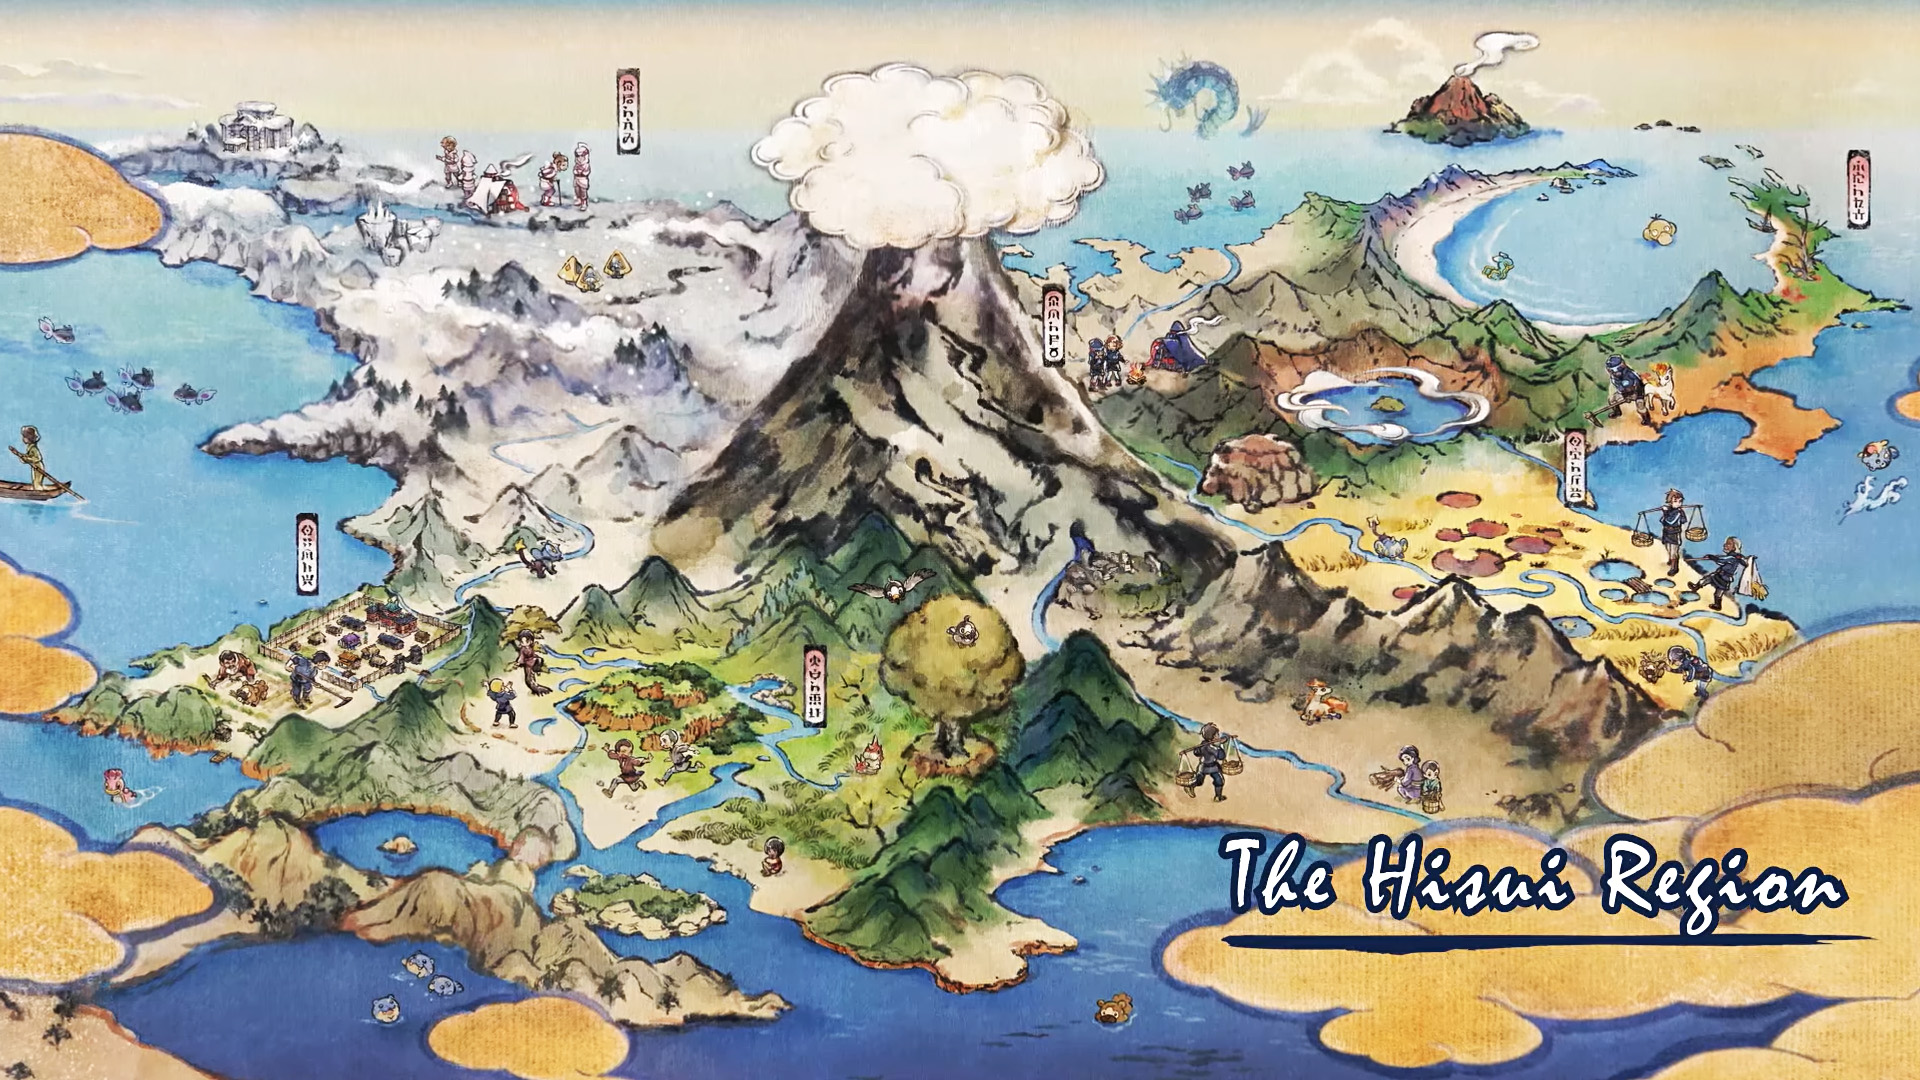 Download Pokemon Legends Arceus Seashore Wallpaper  Wallpaperscom